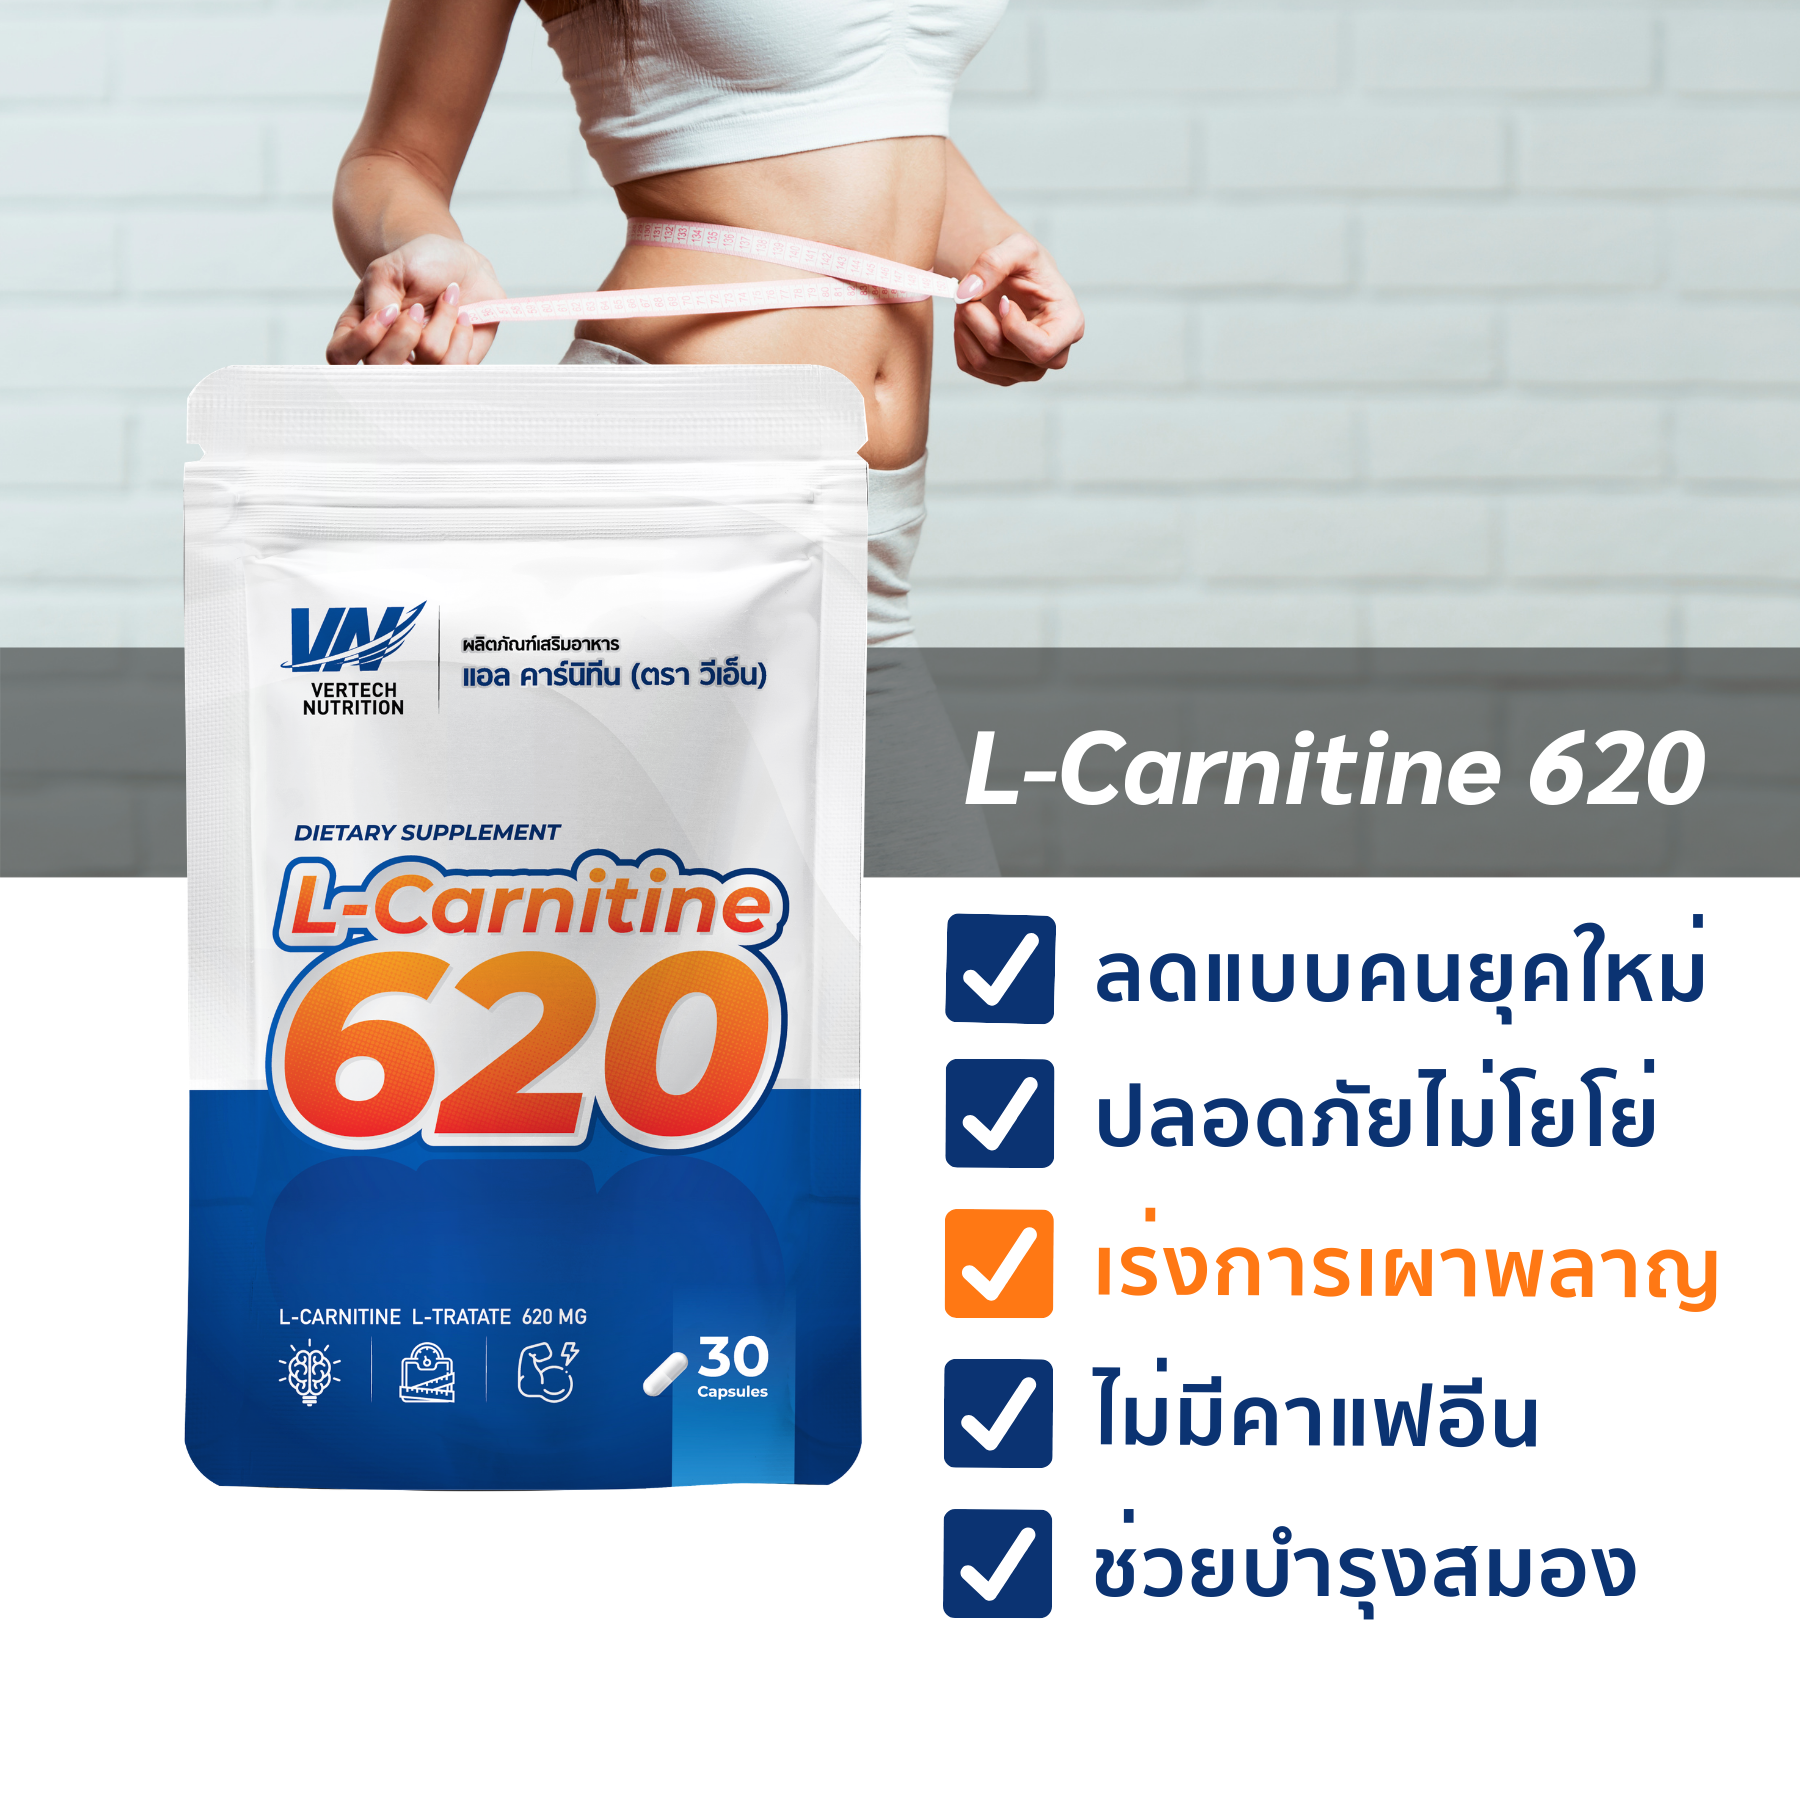 แอลคาร์นิทีน 620 (30 แคปซูล) เวอร์เทคนูทริชั่น VERTECH NUTRITION L-Carnitine 620 (30 capsules) (อาหารเสริม, ออกกำลังกาย, ควบคุมน้ำหนัก)